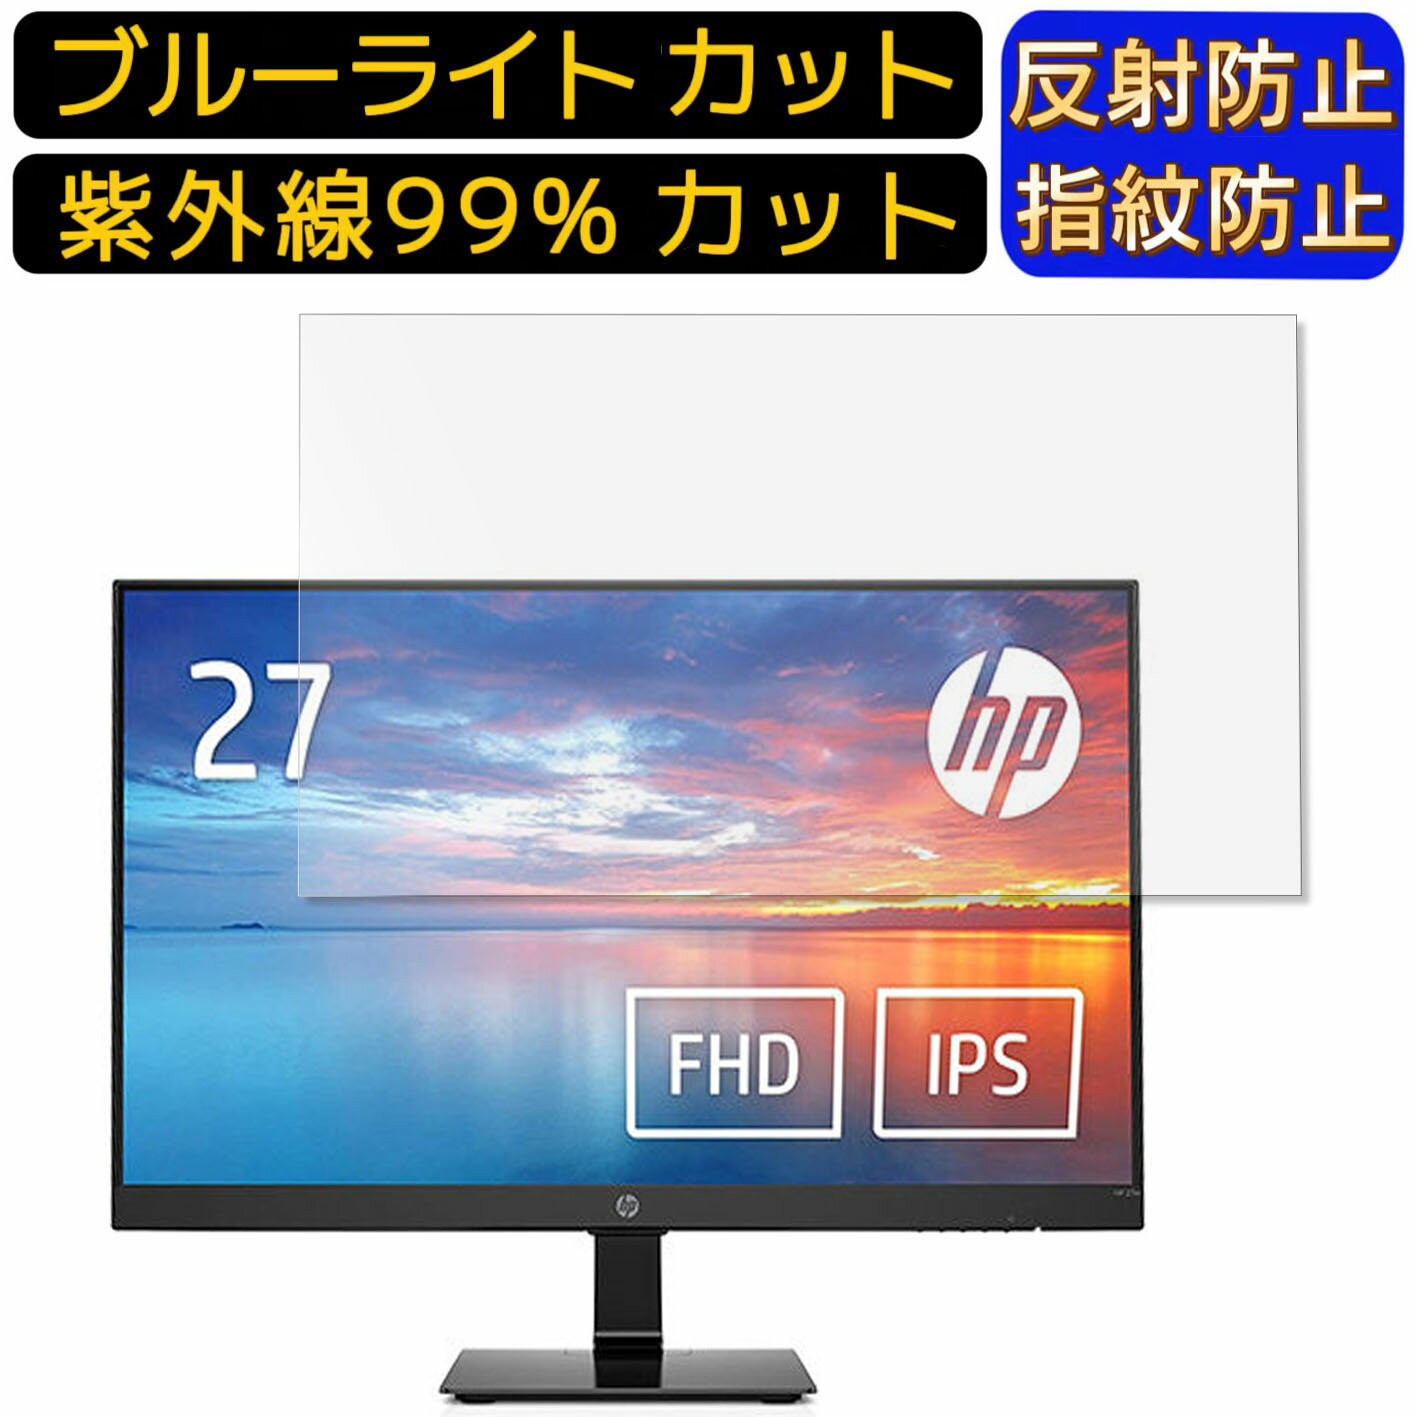 【ポイント2倍】HP モニター HP 27m 27